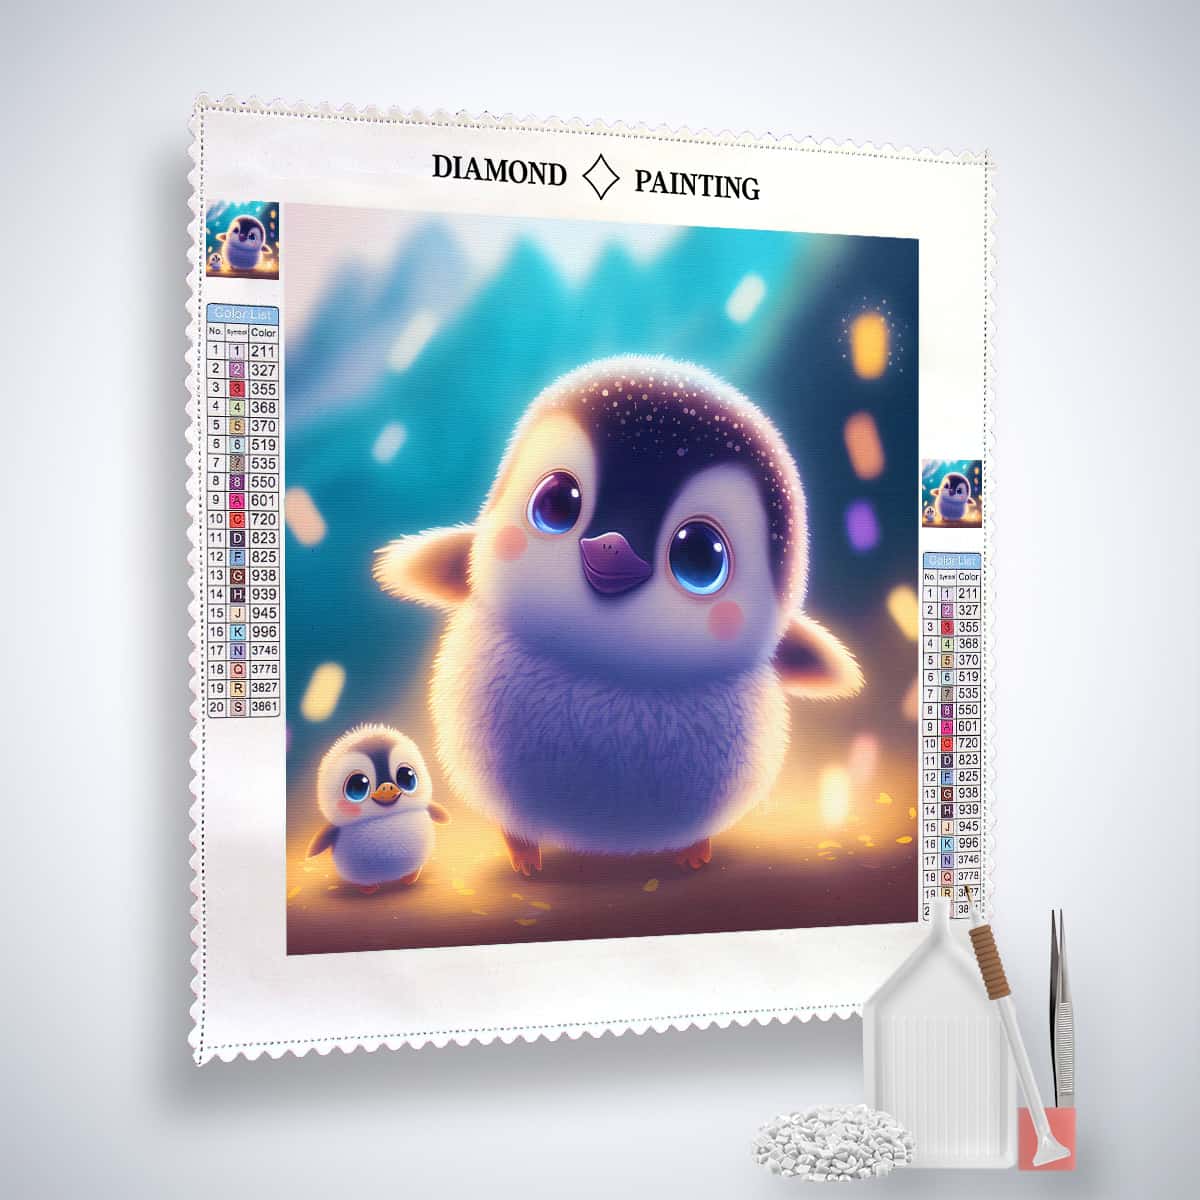 Diamond Painting - Friedlicher Pinguin mit Kind - gedruckt in Ultra-HD - Neu eingetroffen, Pinguin, Quadratisch, Tiere